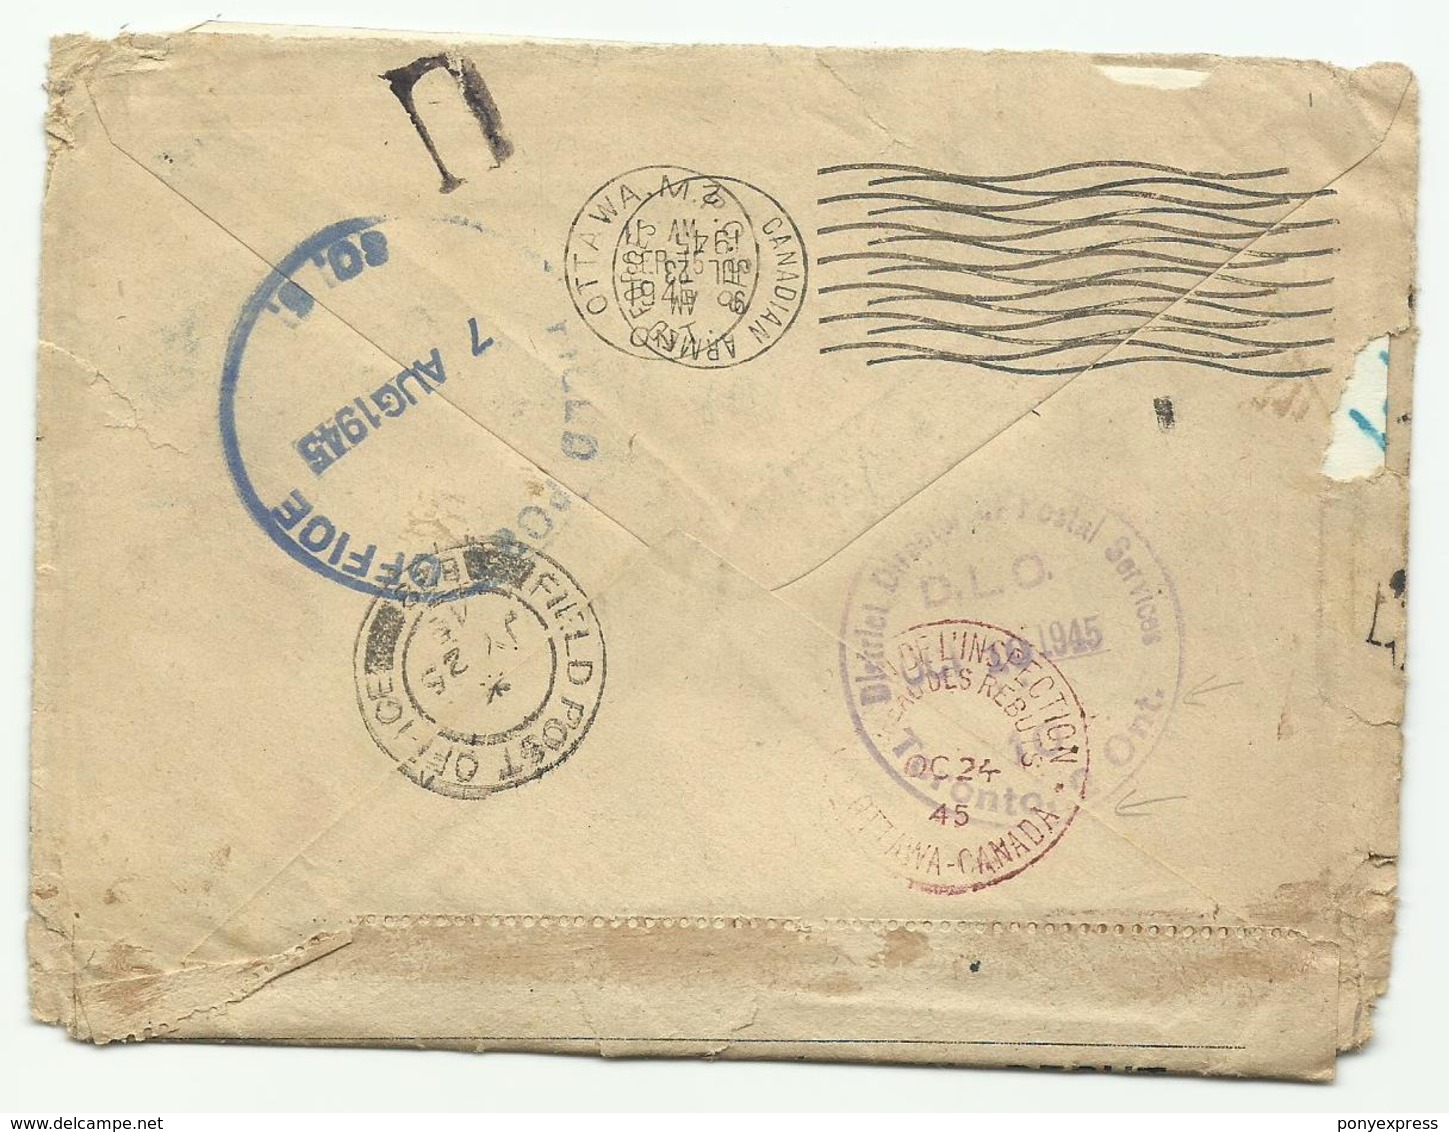 Lettre Frappée De Plusieurs Cachets De Rebuts France & Canada Fin 1945 - Postal History